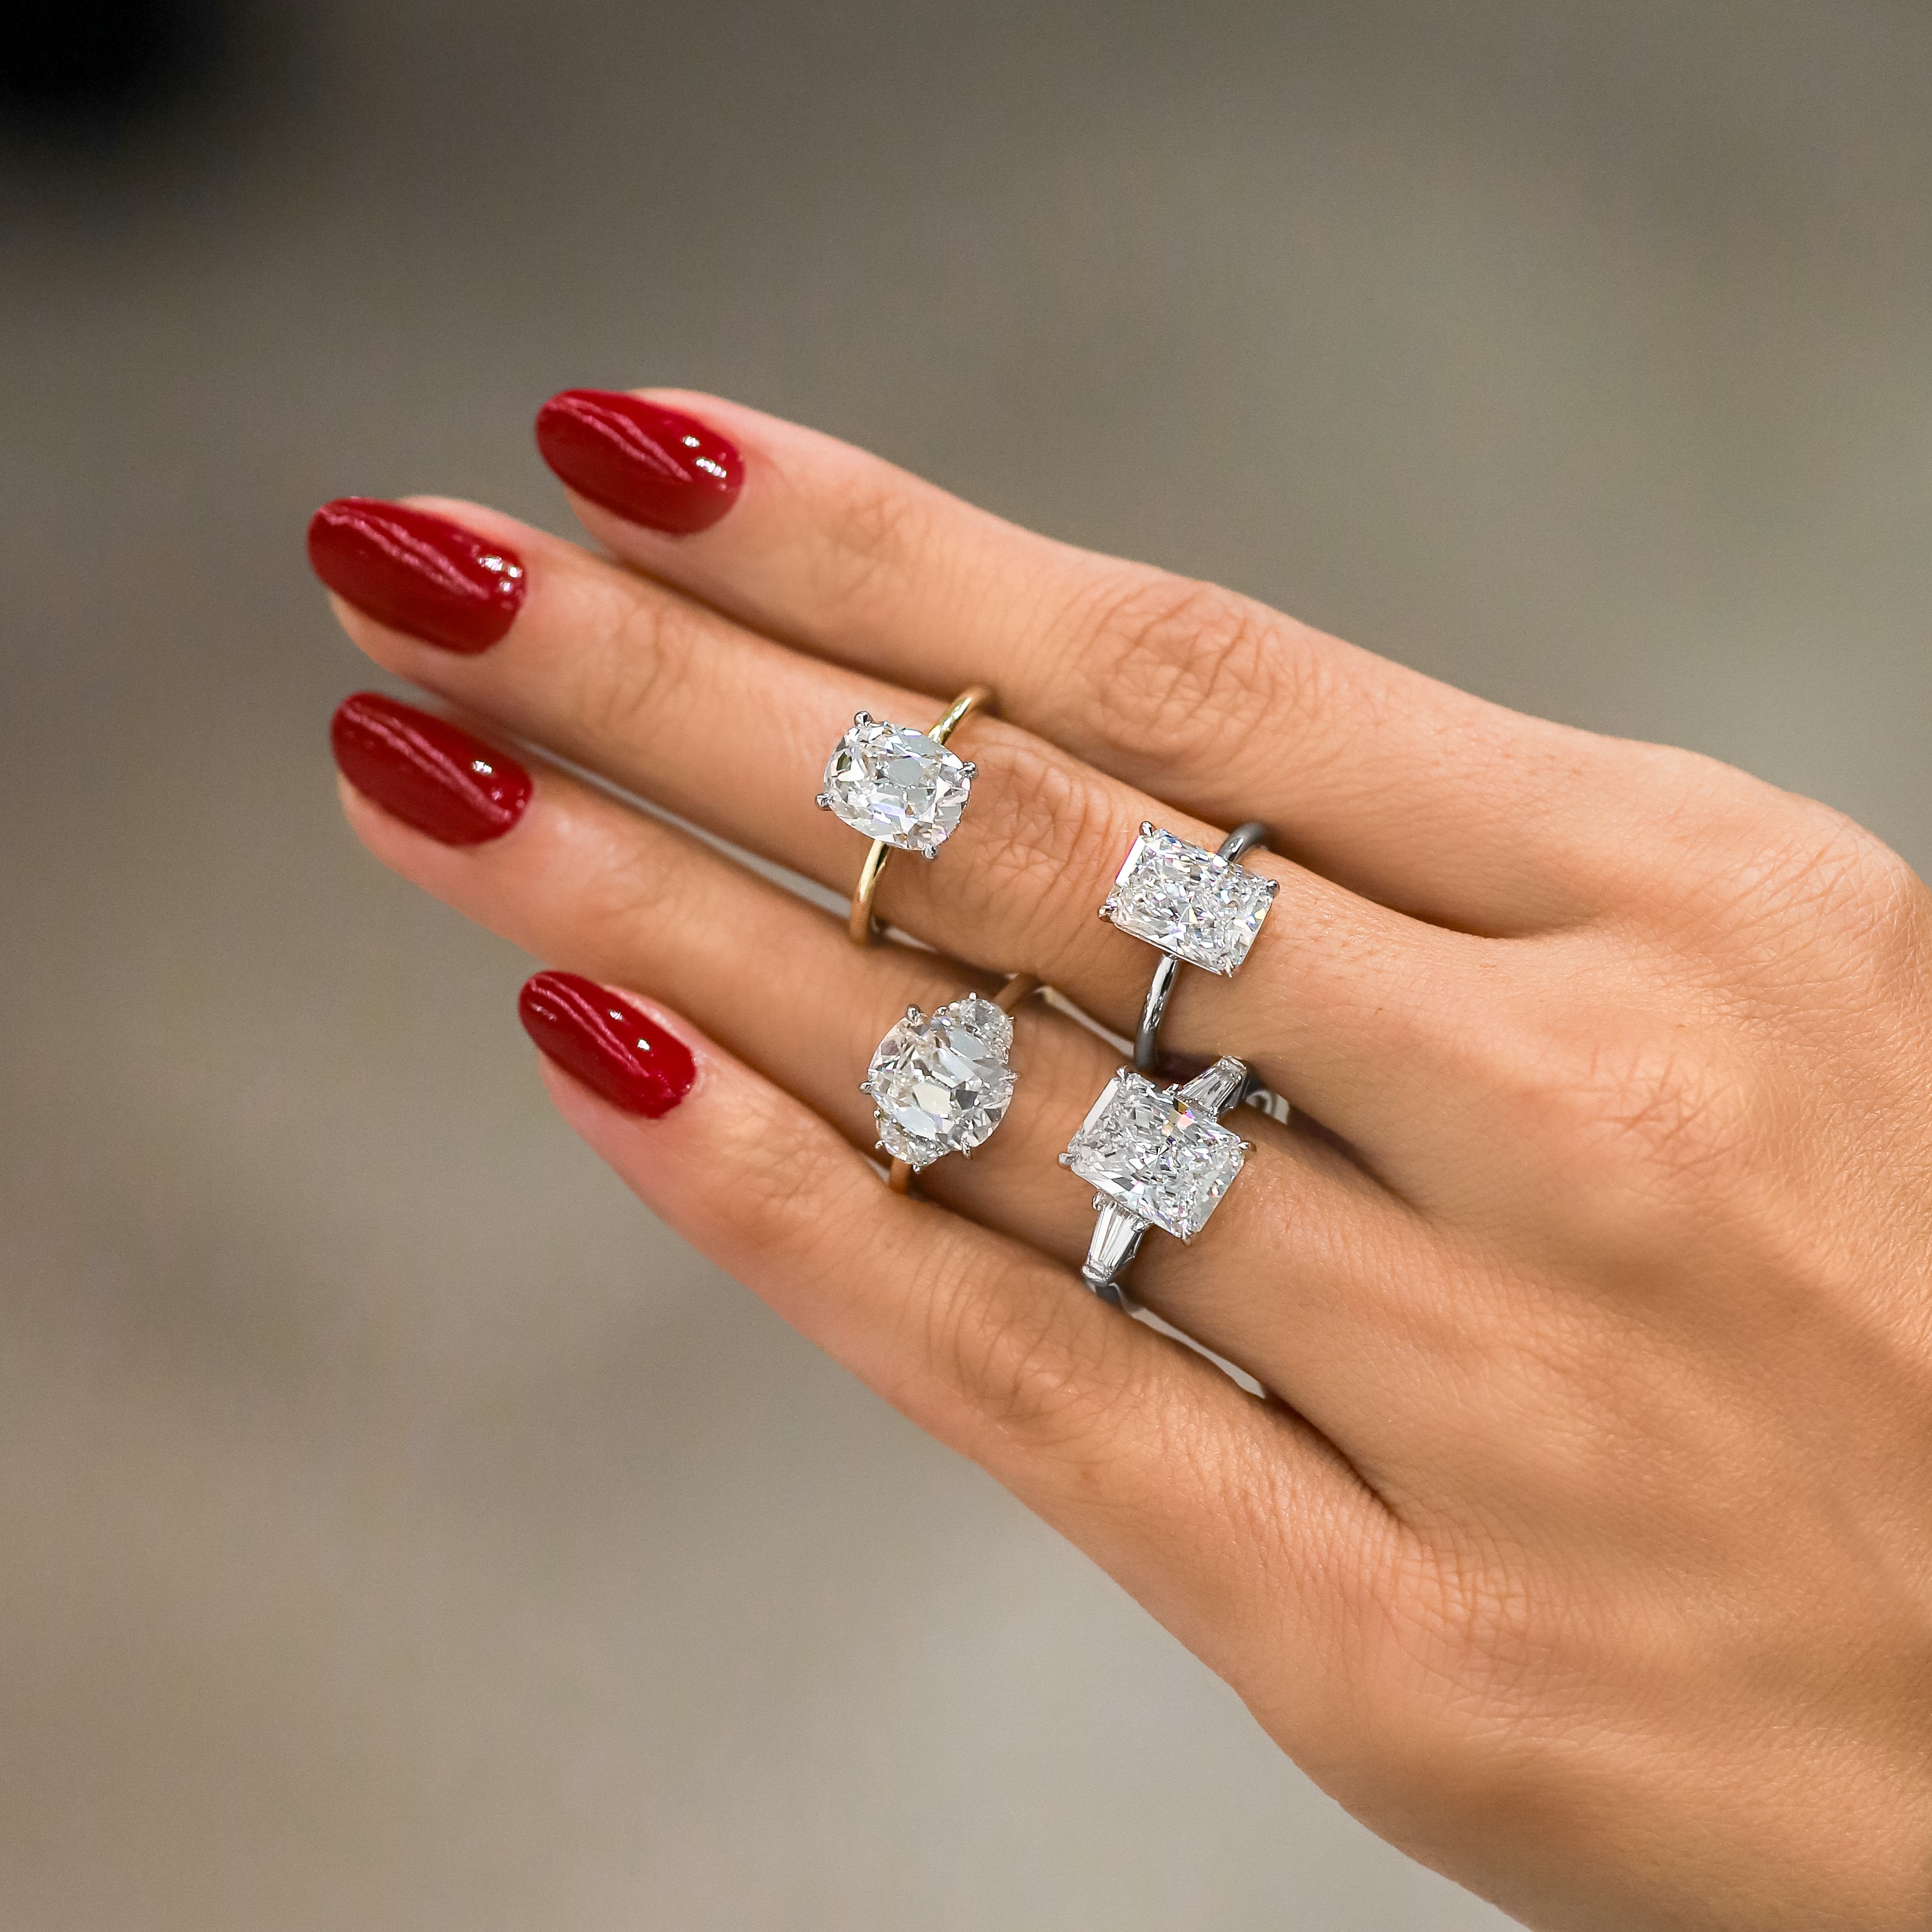 Engagement Ring Dermal Piercings Are Trending On Instagram | Teen Vogue